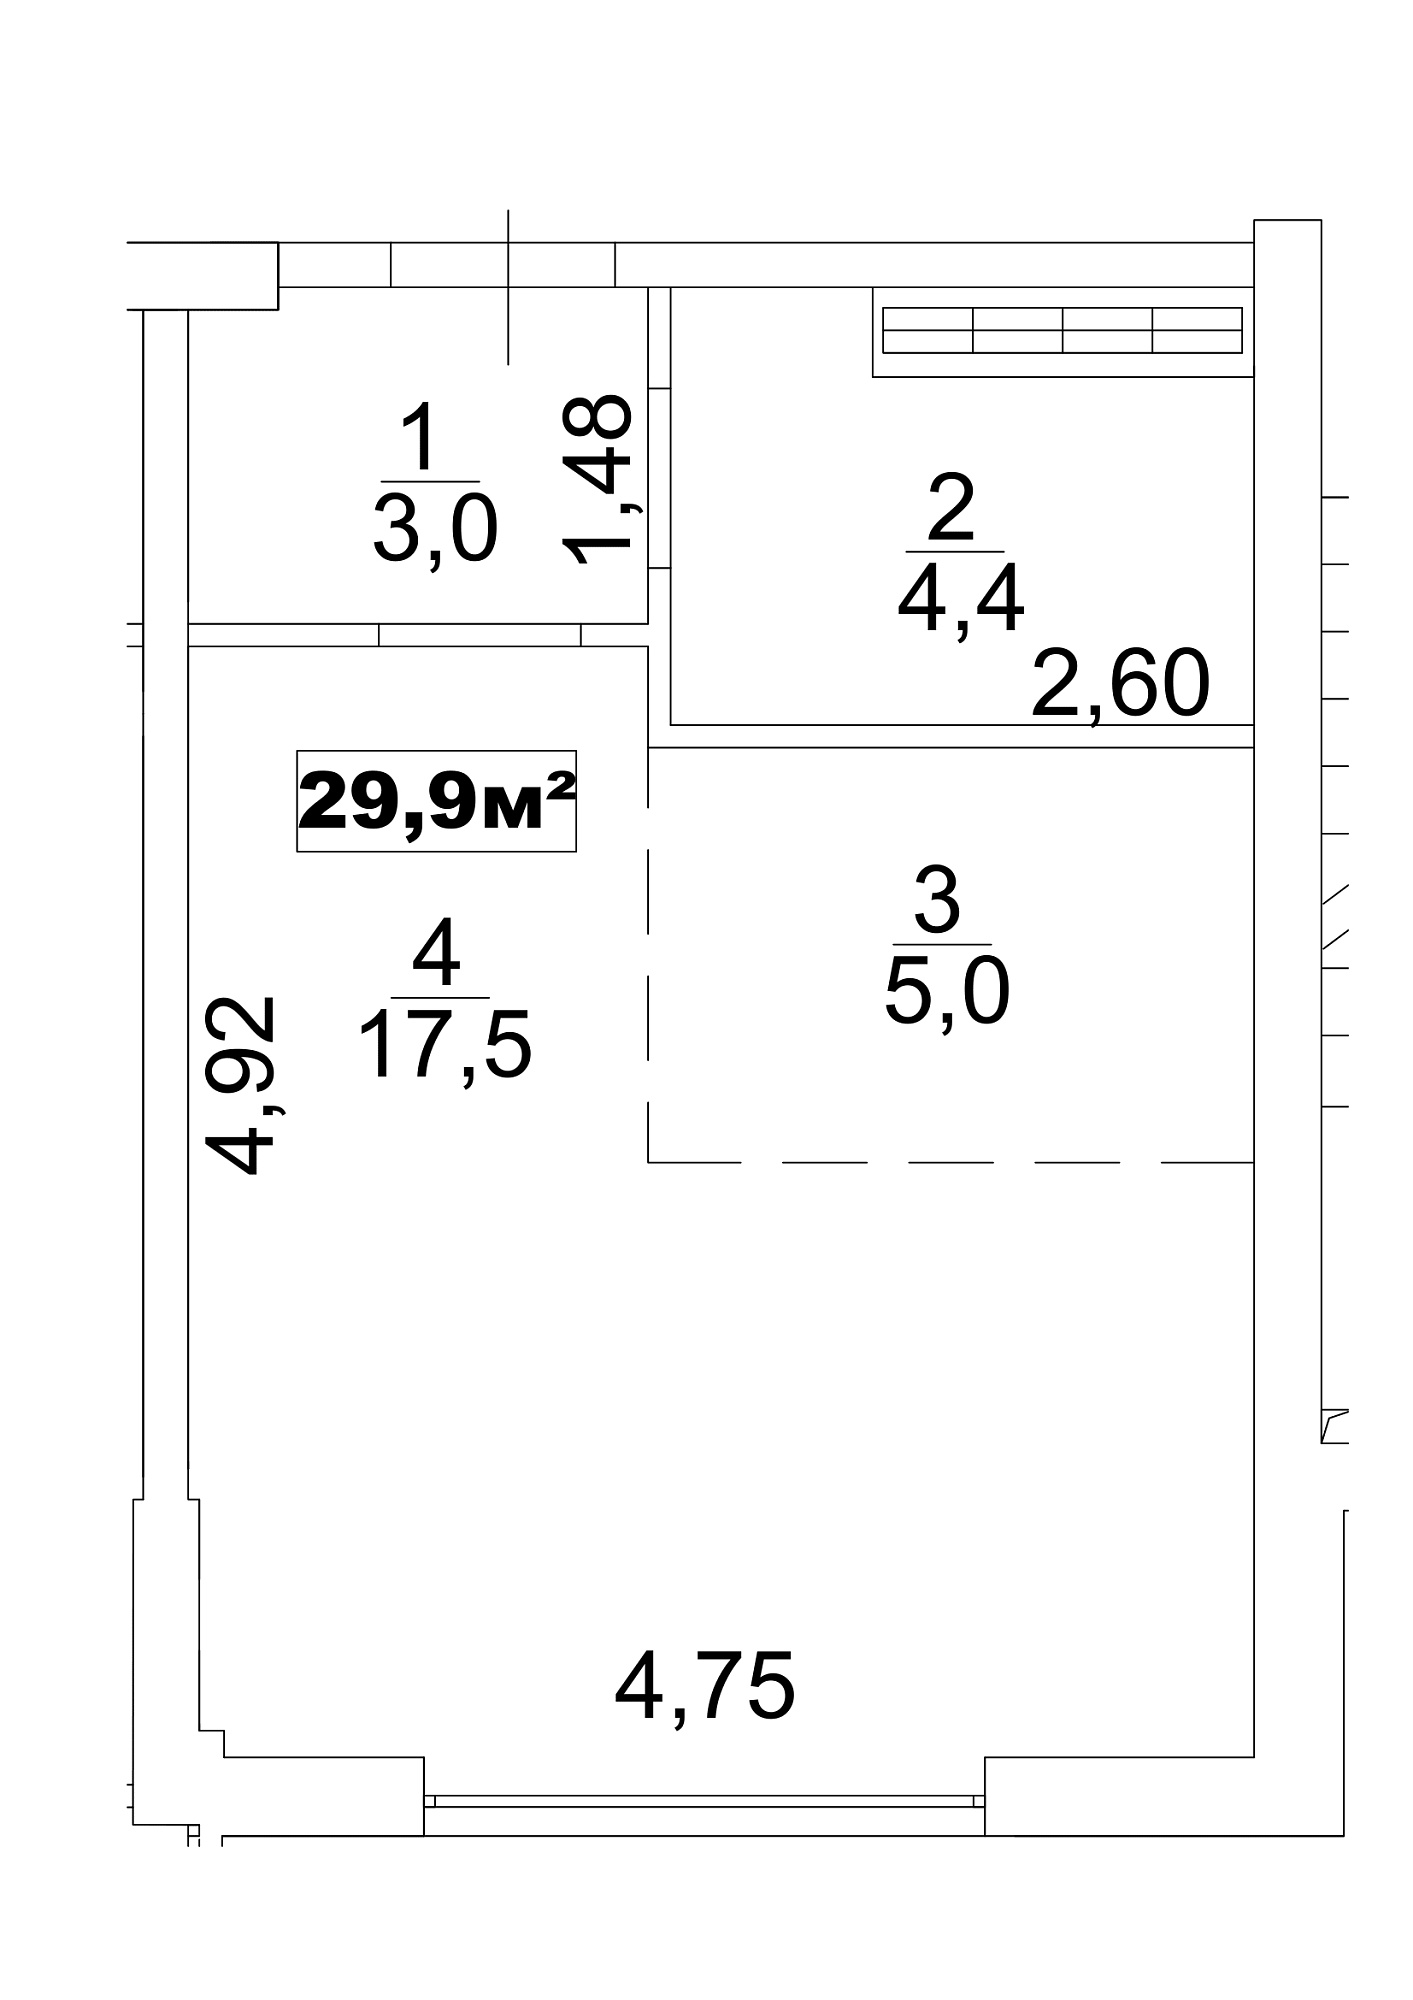 Планування Smart-квартира площею 29.9м2, AB-13-05/0034а.